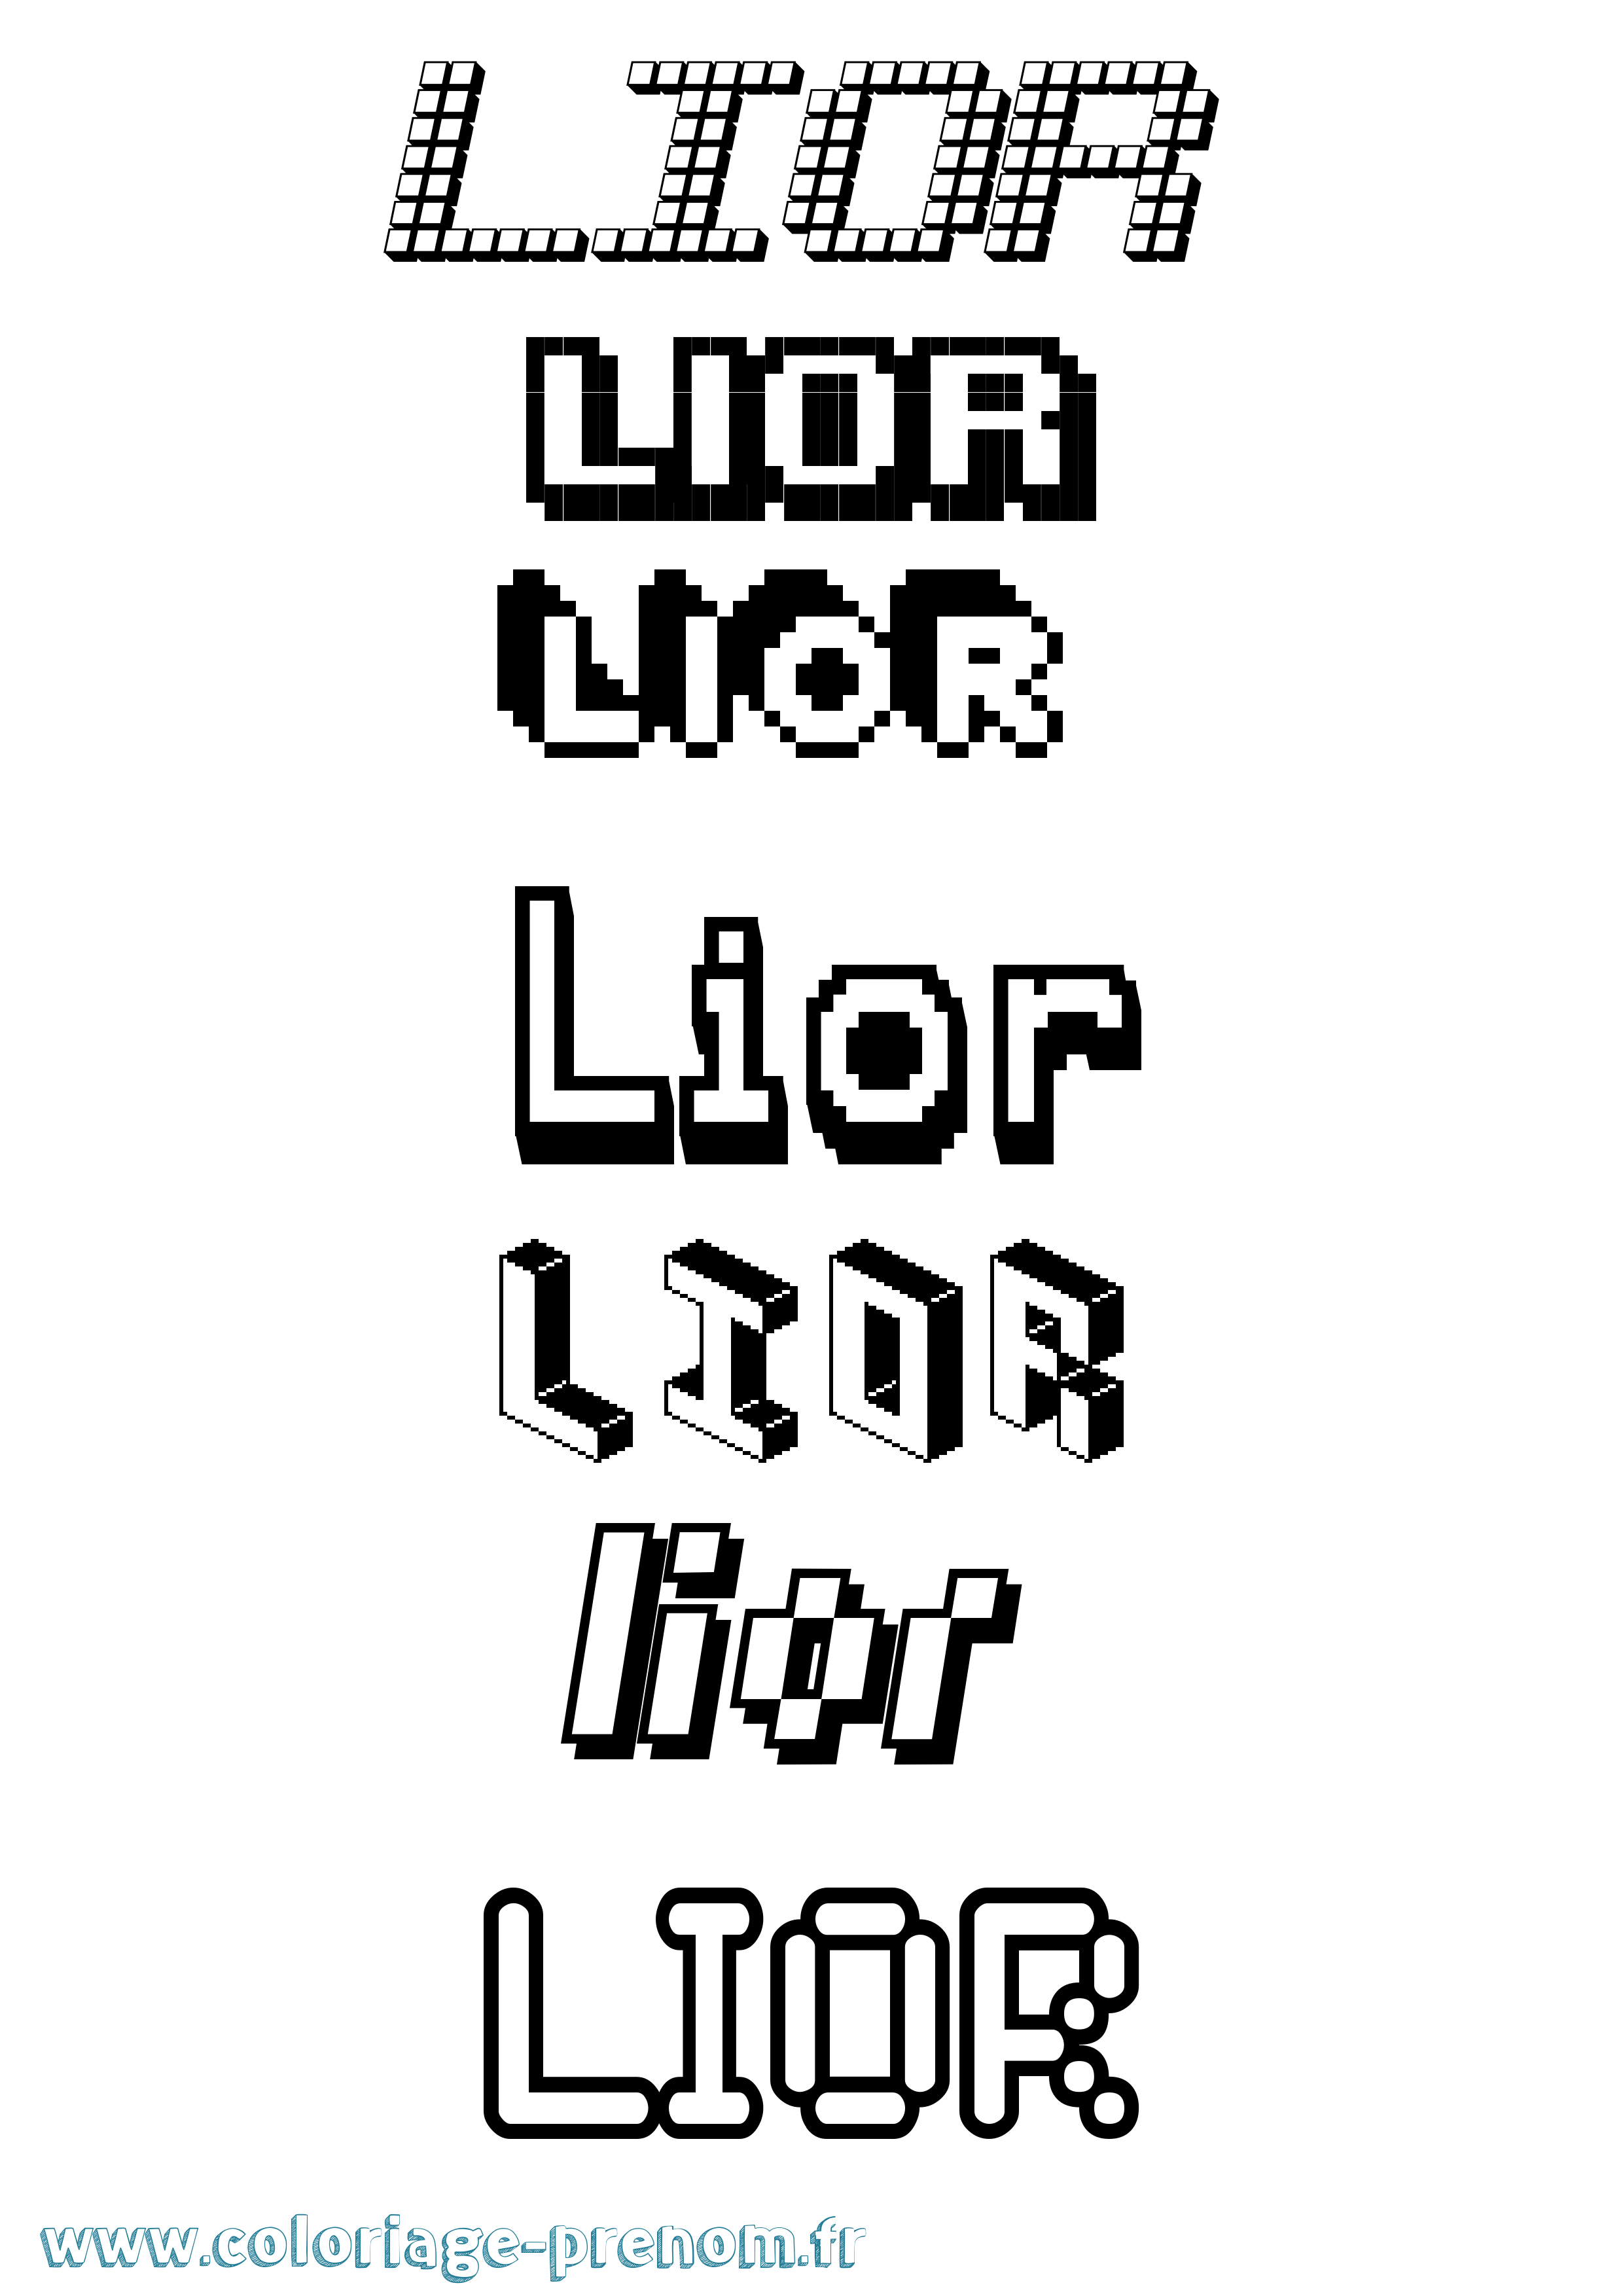 Coloriage prénom Lior Pixel